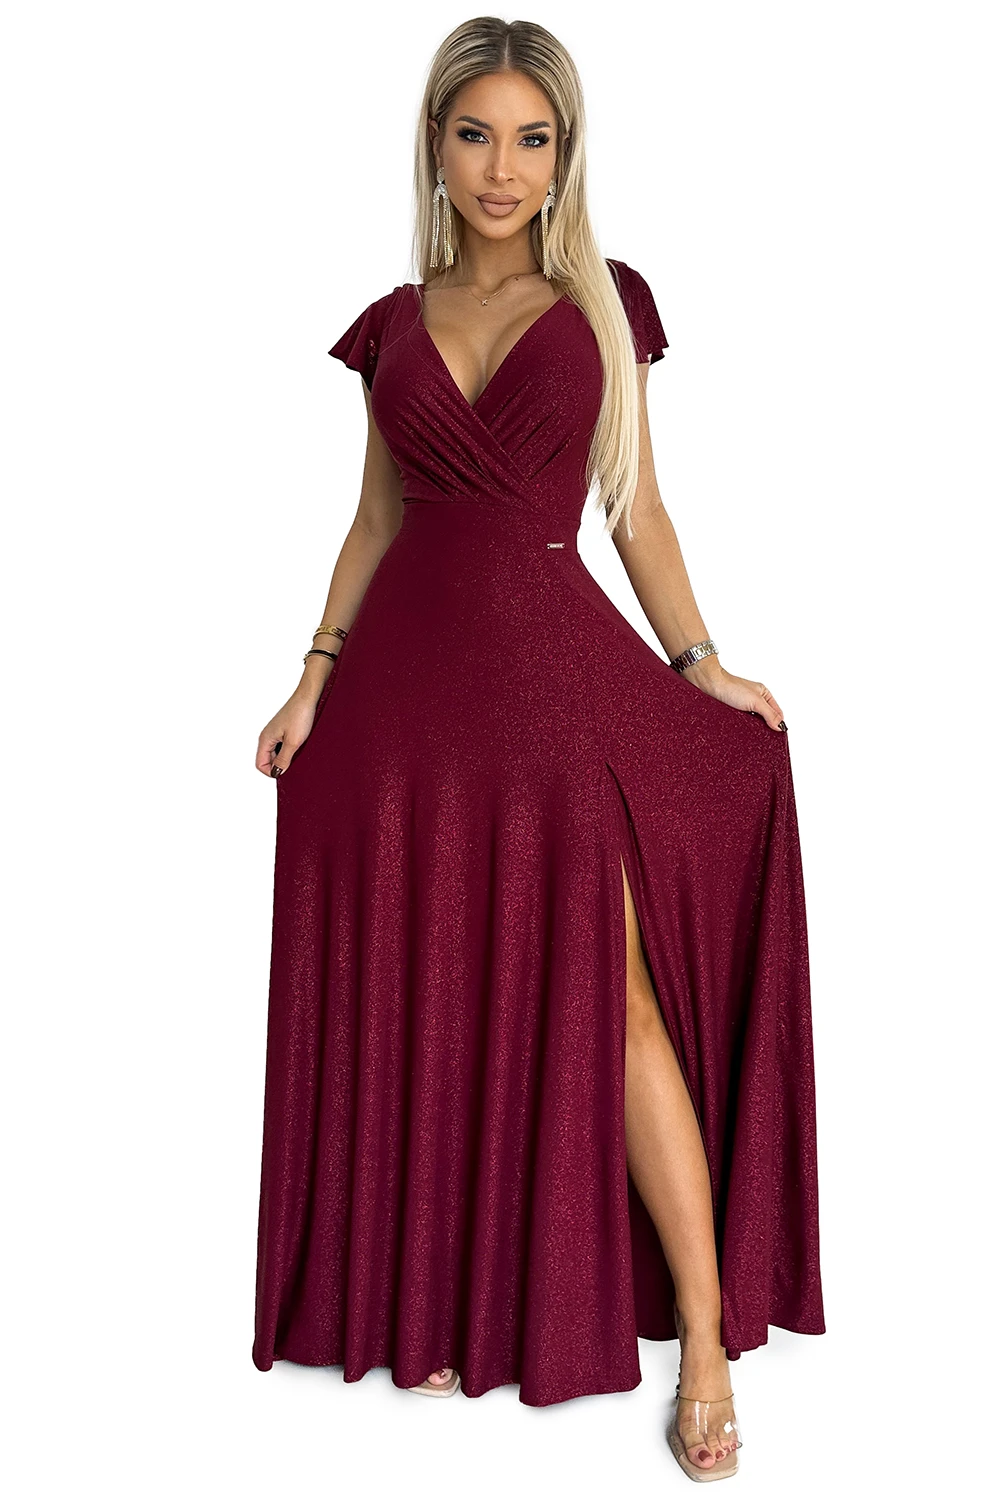 411-8 CRYSTAL połyskująca długa suknia z dekoltem - BORDOWA